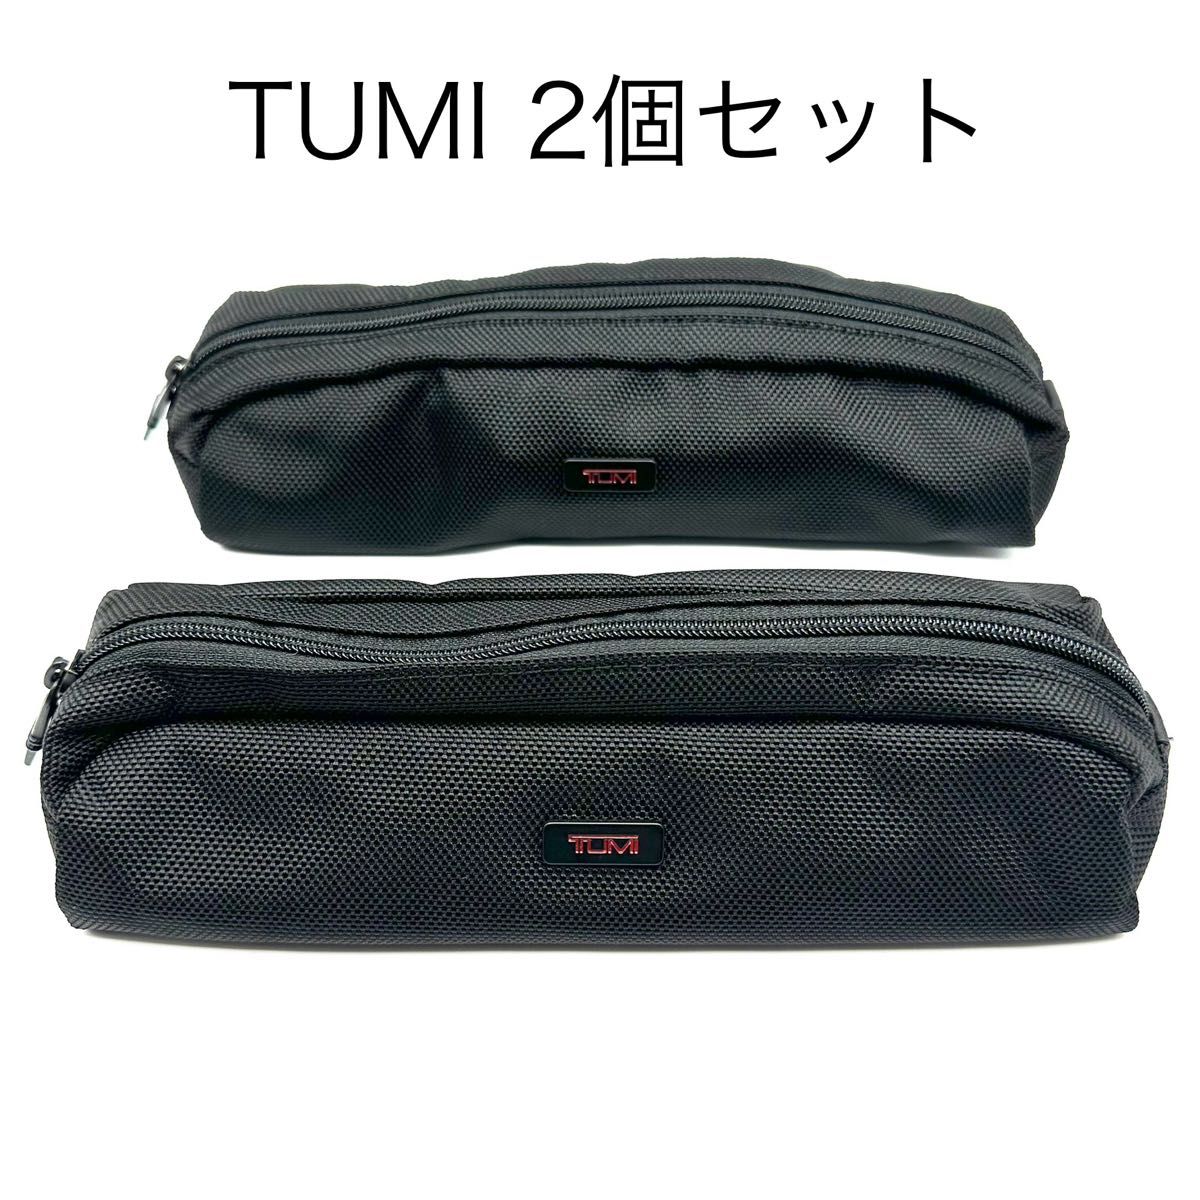 【2個セット】TUMI トラベルポーチ マルチケース トゥミ ブラック 小物入れ ケーブルケース バリスティックナイロン